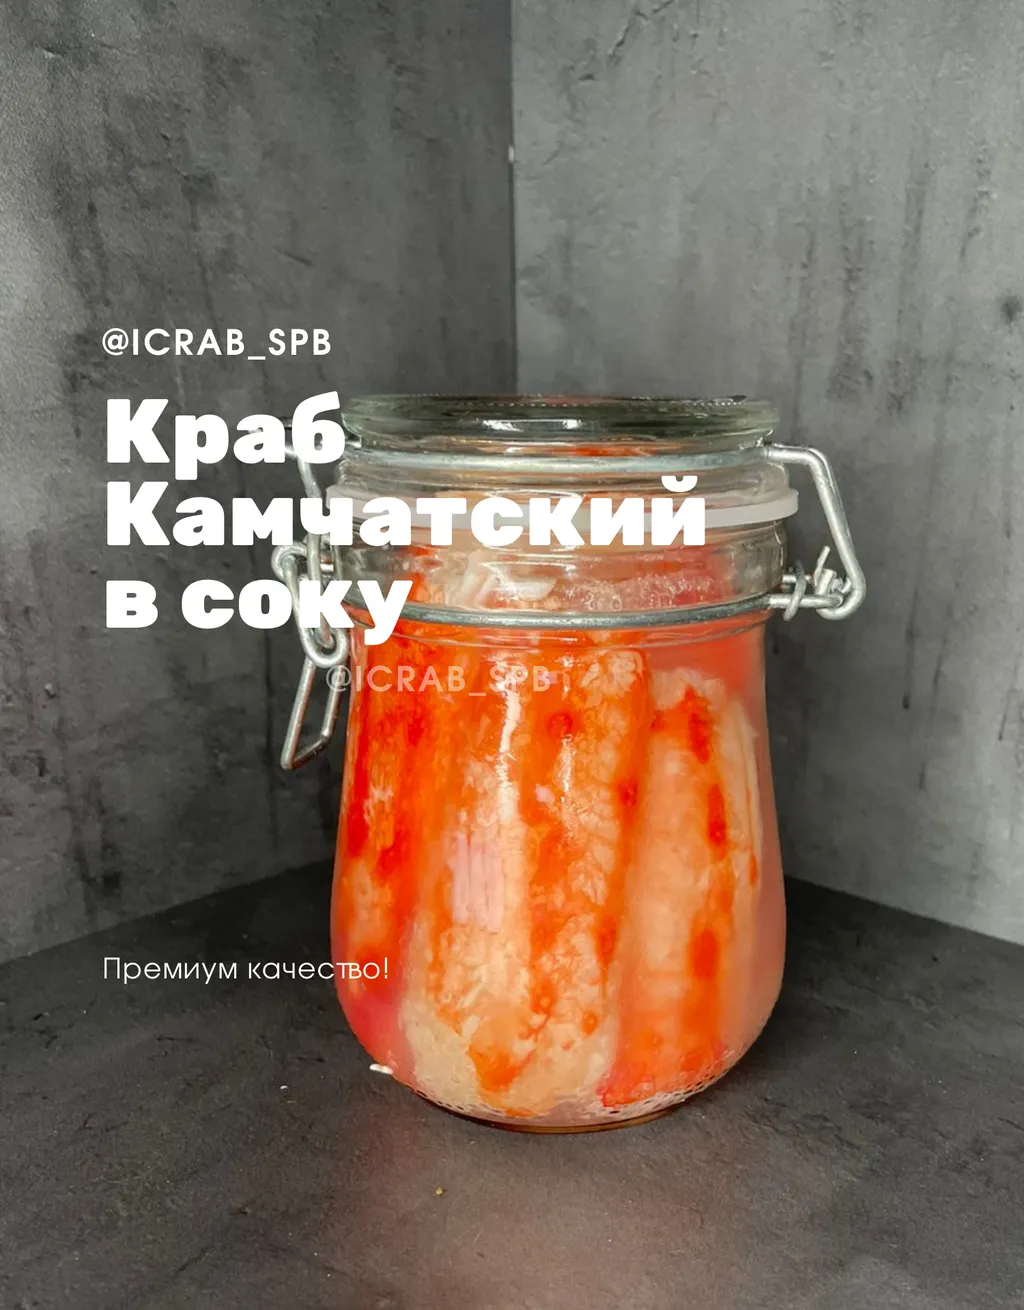 мясо краба в банке Краб в соку оптом в Санкт-Петербурге